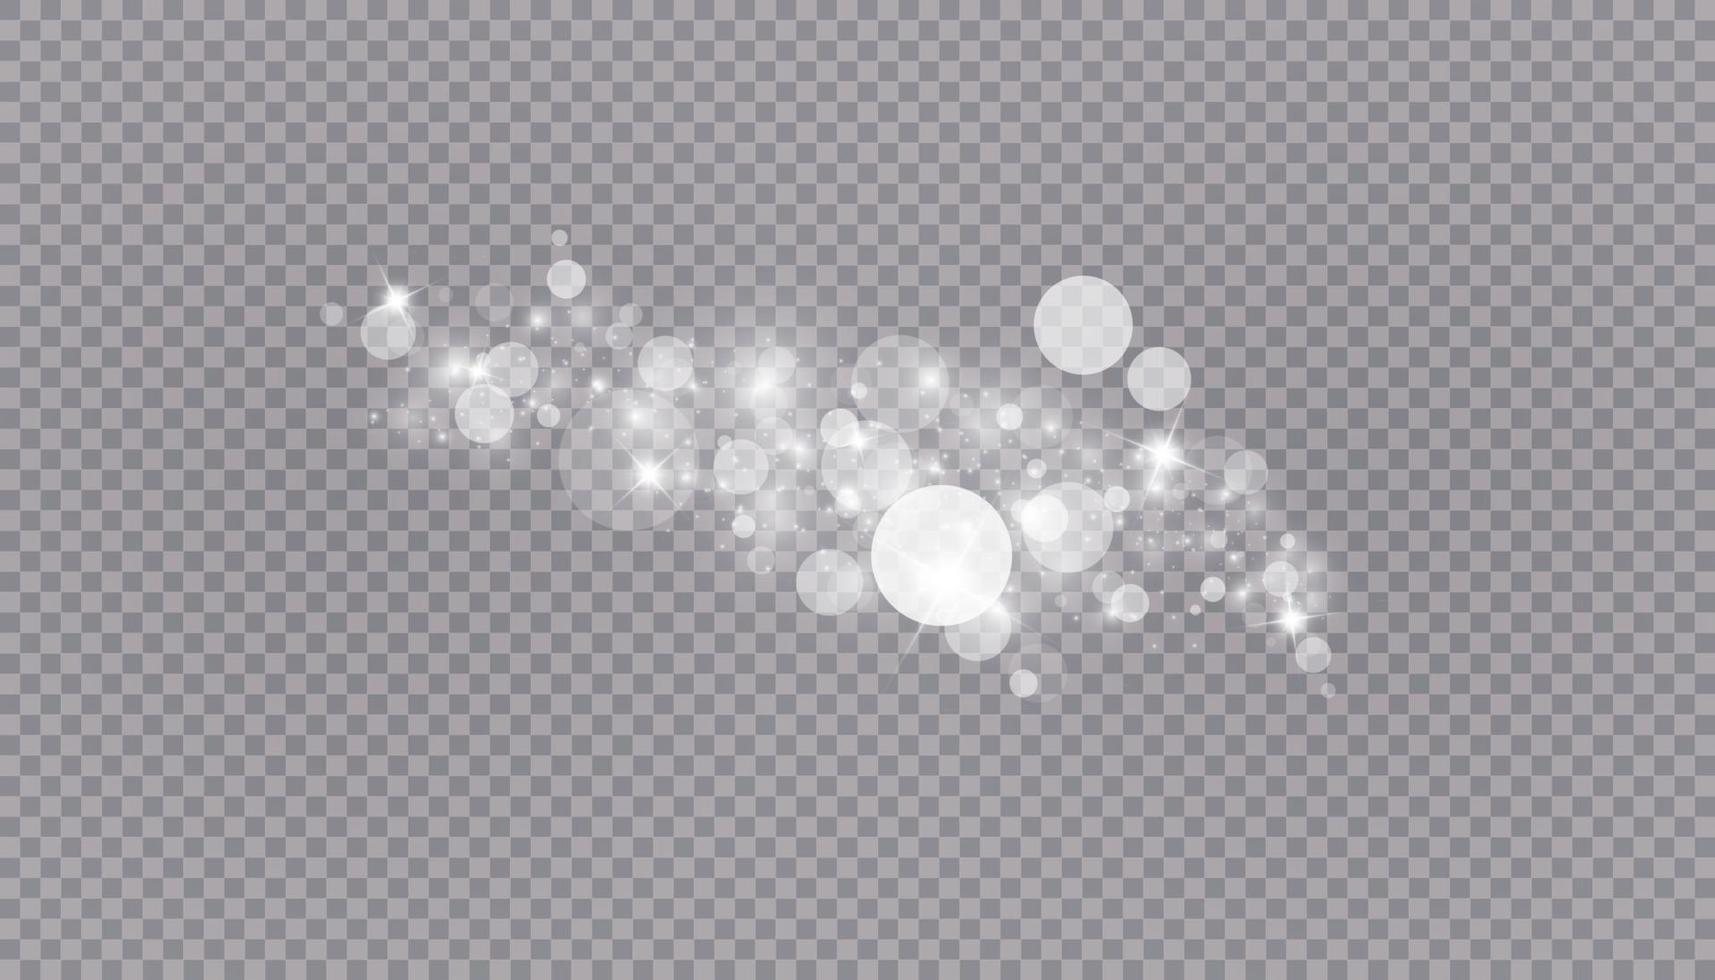 gloeiend lichteffect met veel glitterdeeltjes geïsoleerde achtergrond. vector sterrenwolk met stof. magische kerstversiering